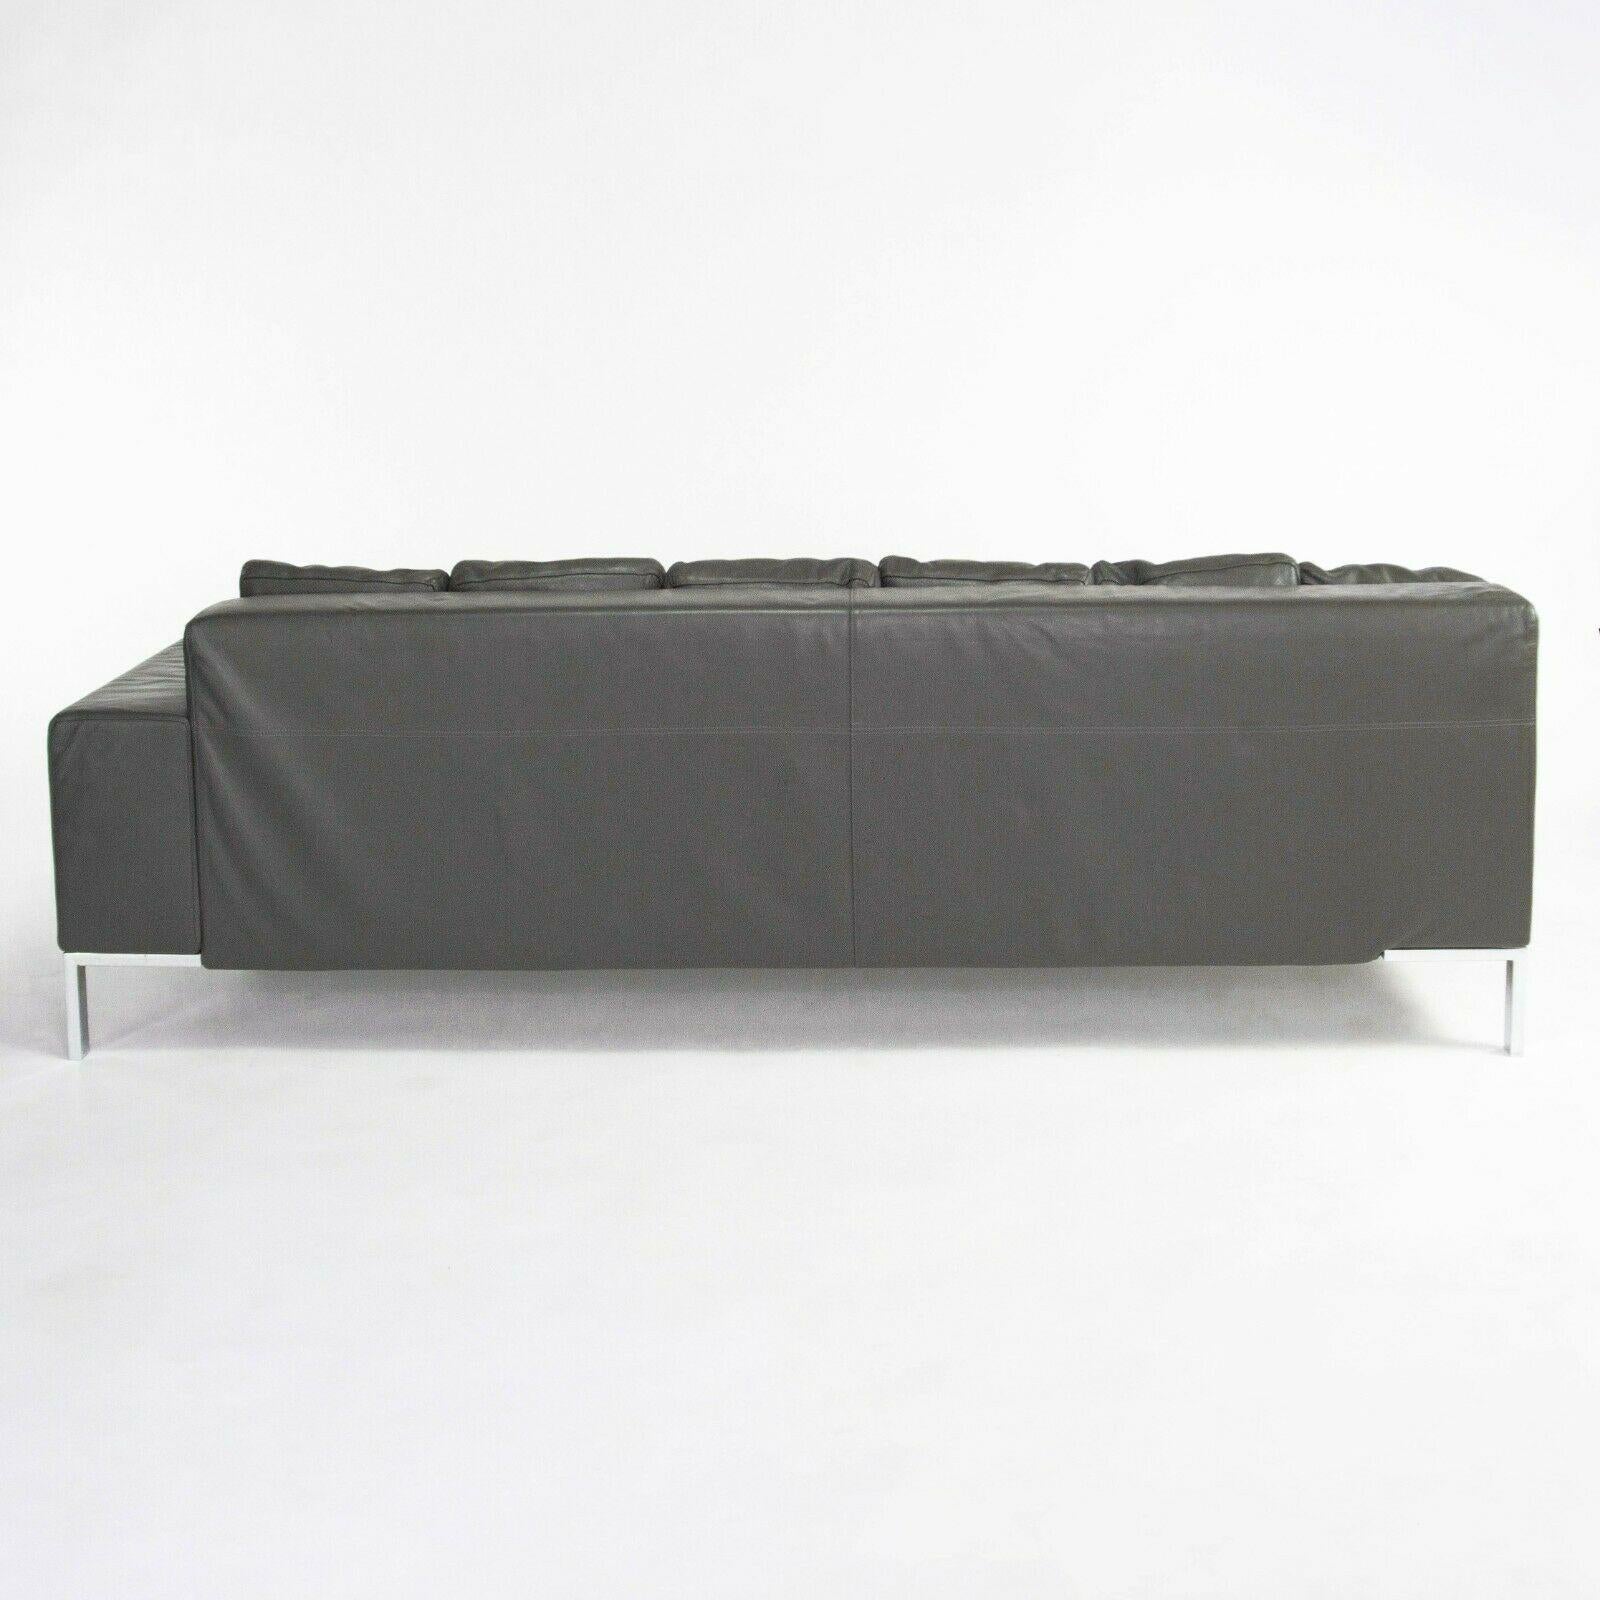 Il s'agit d'un canapé sectionnel/modulaire 